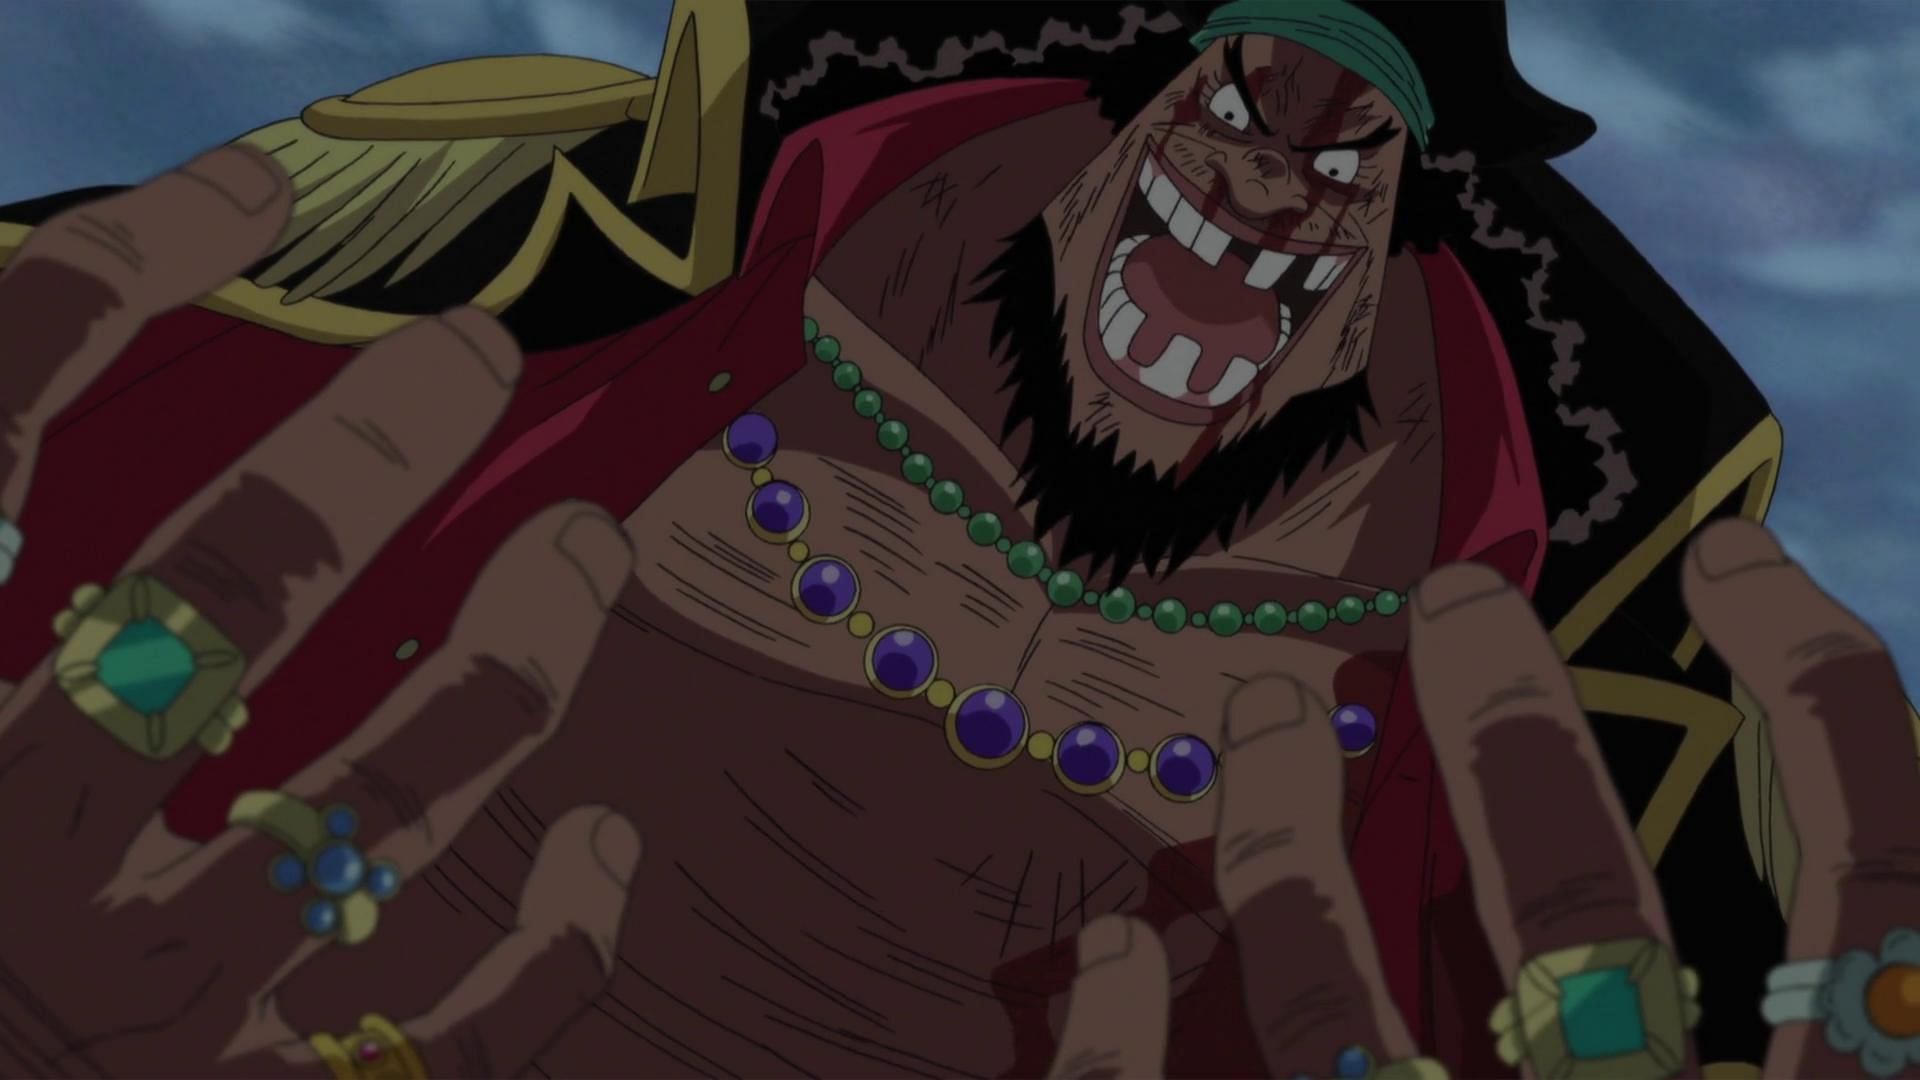 Blackbeard as seen in One Piece (Image via Toei Animation, One Piece)